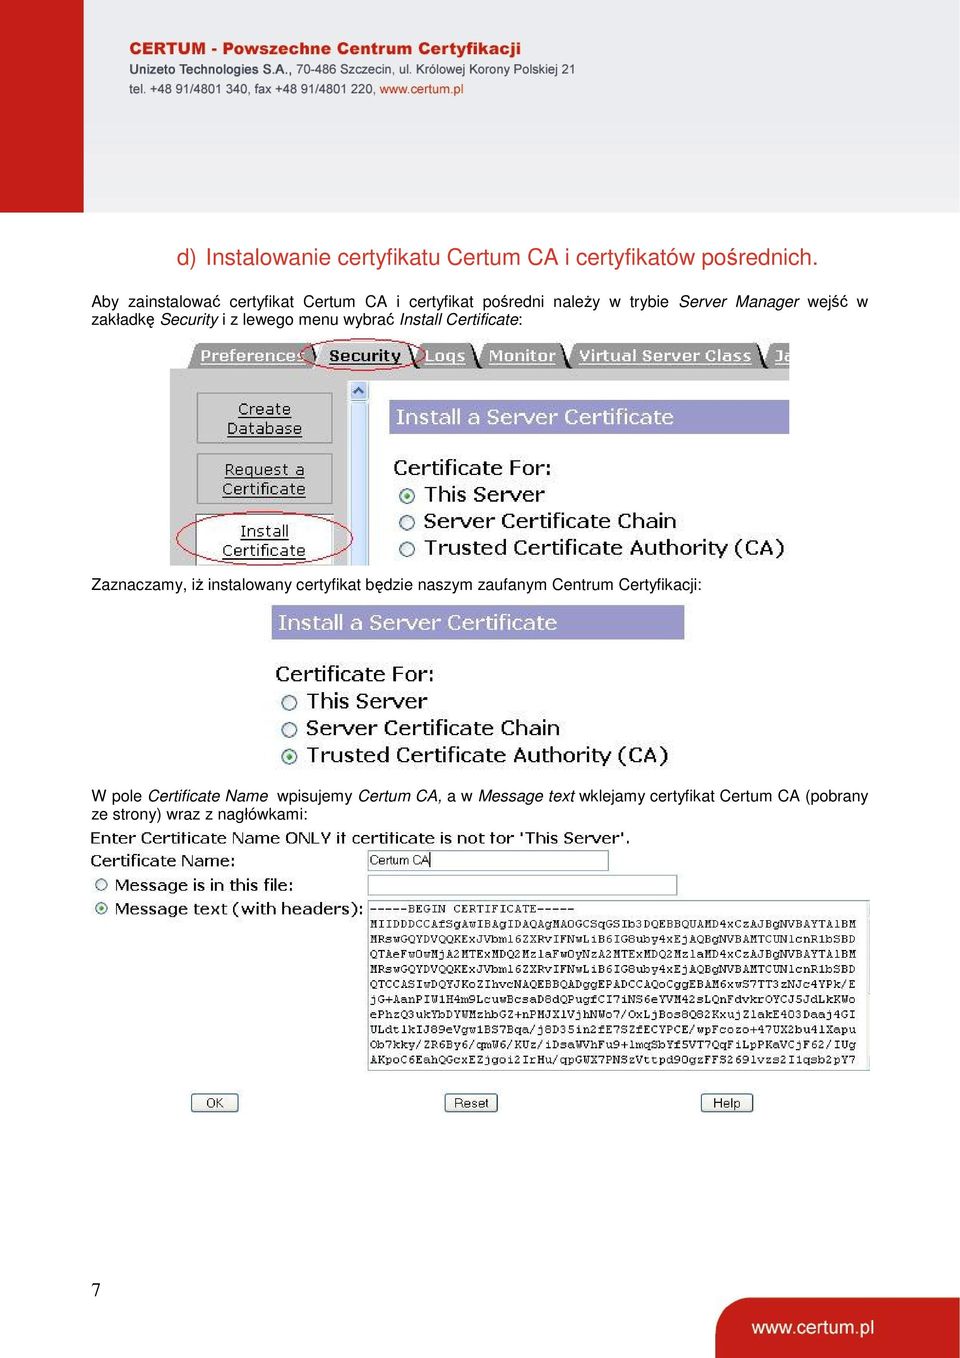 Security i z lewego menu wybrać Install Certificate: Zaznaczamy, iż instalowany certyfikat będzie naszym